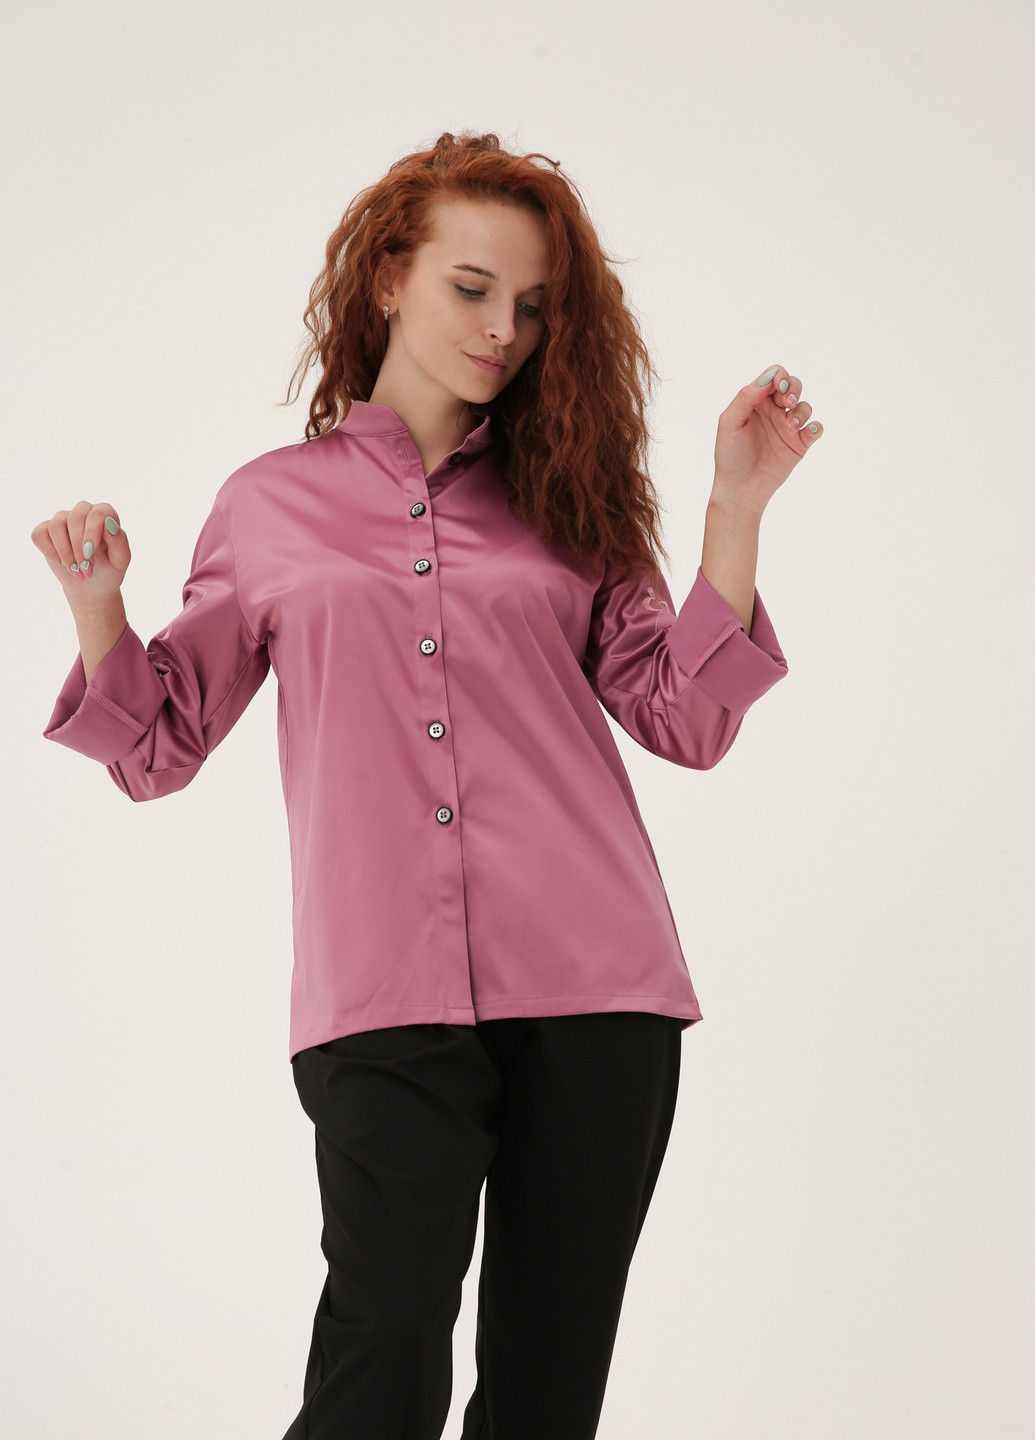 Сливова демісезонна сорочка - піджак з полірованой бавовни з вишивкою на рукавах INNOE Рубашка - пиджак